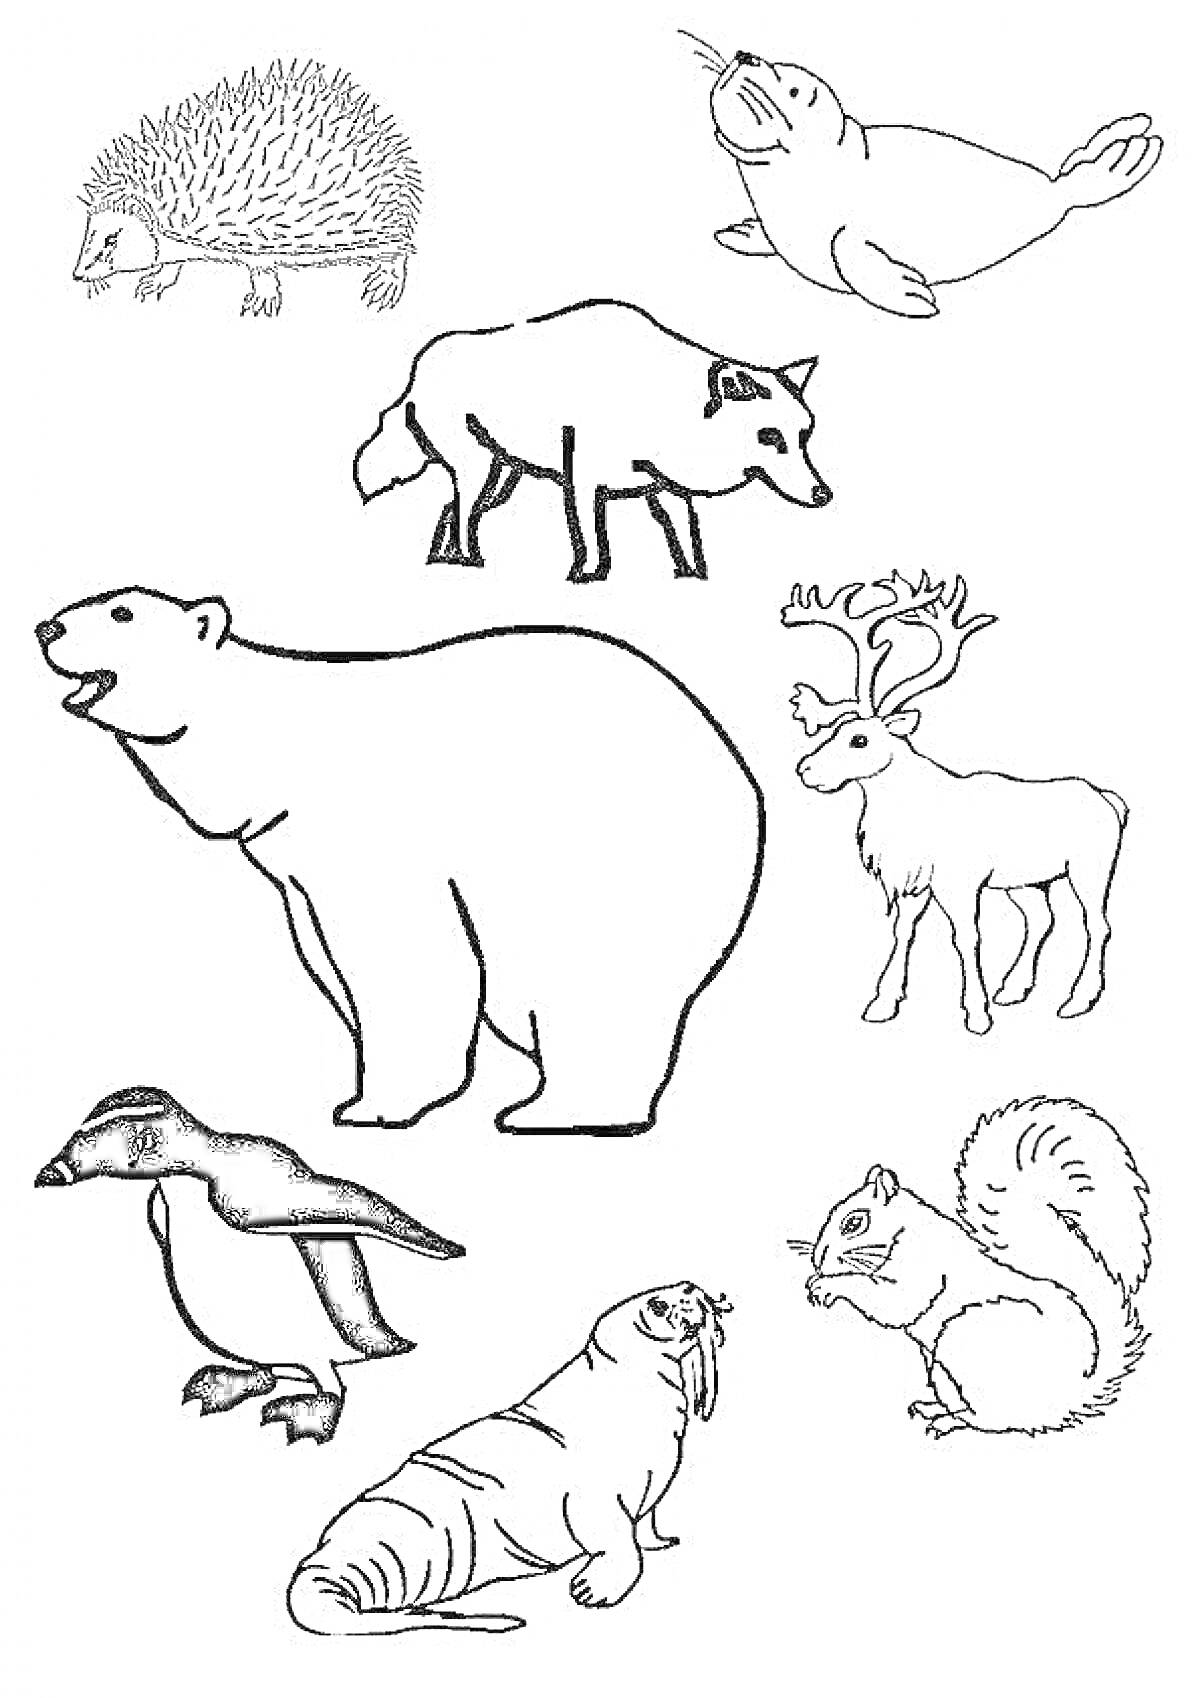 Раскраска животных Севера с изображением ёжика, тюленя, волка, белого медведя, северного оленя, пингвина, моржа и белки